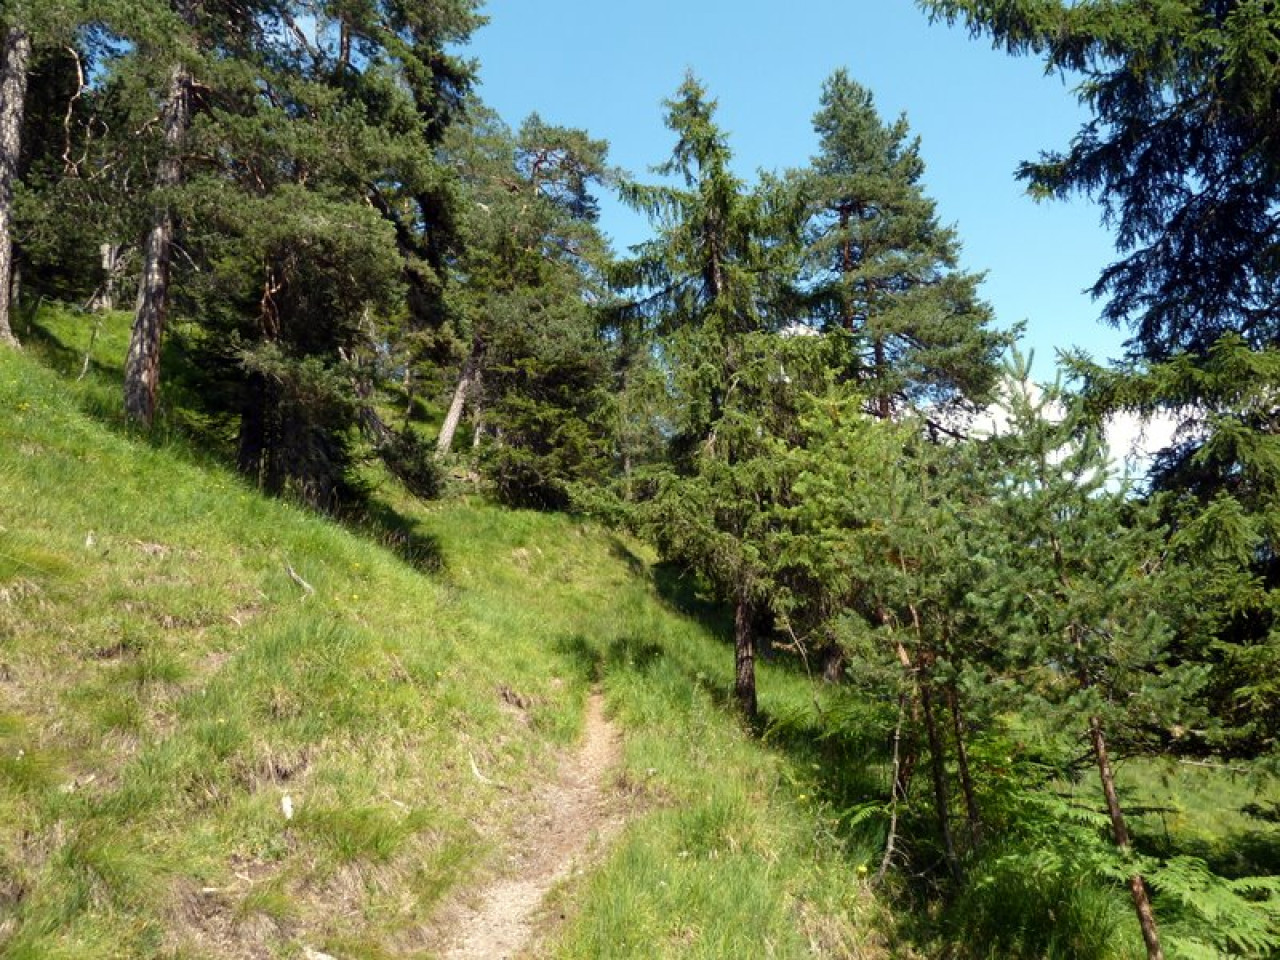  schmaler Weg - Grubachspitze